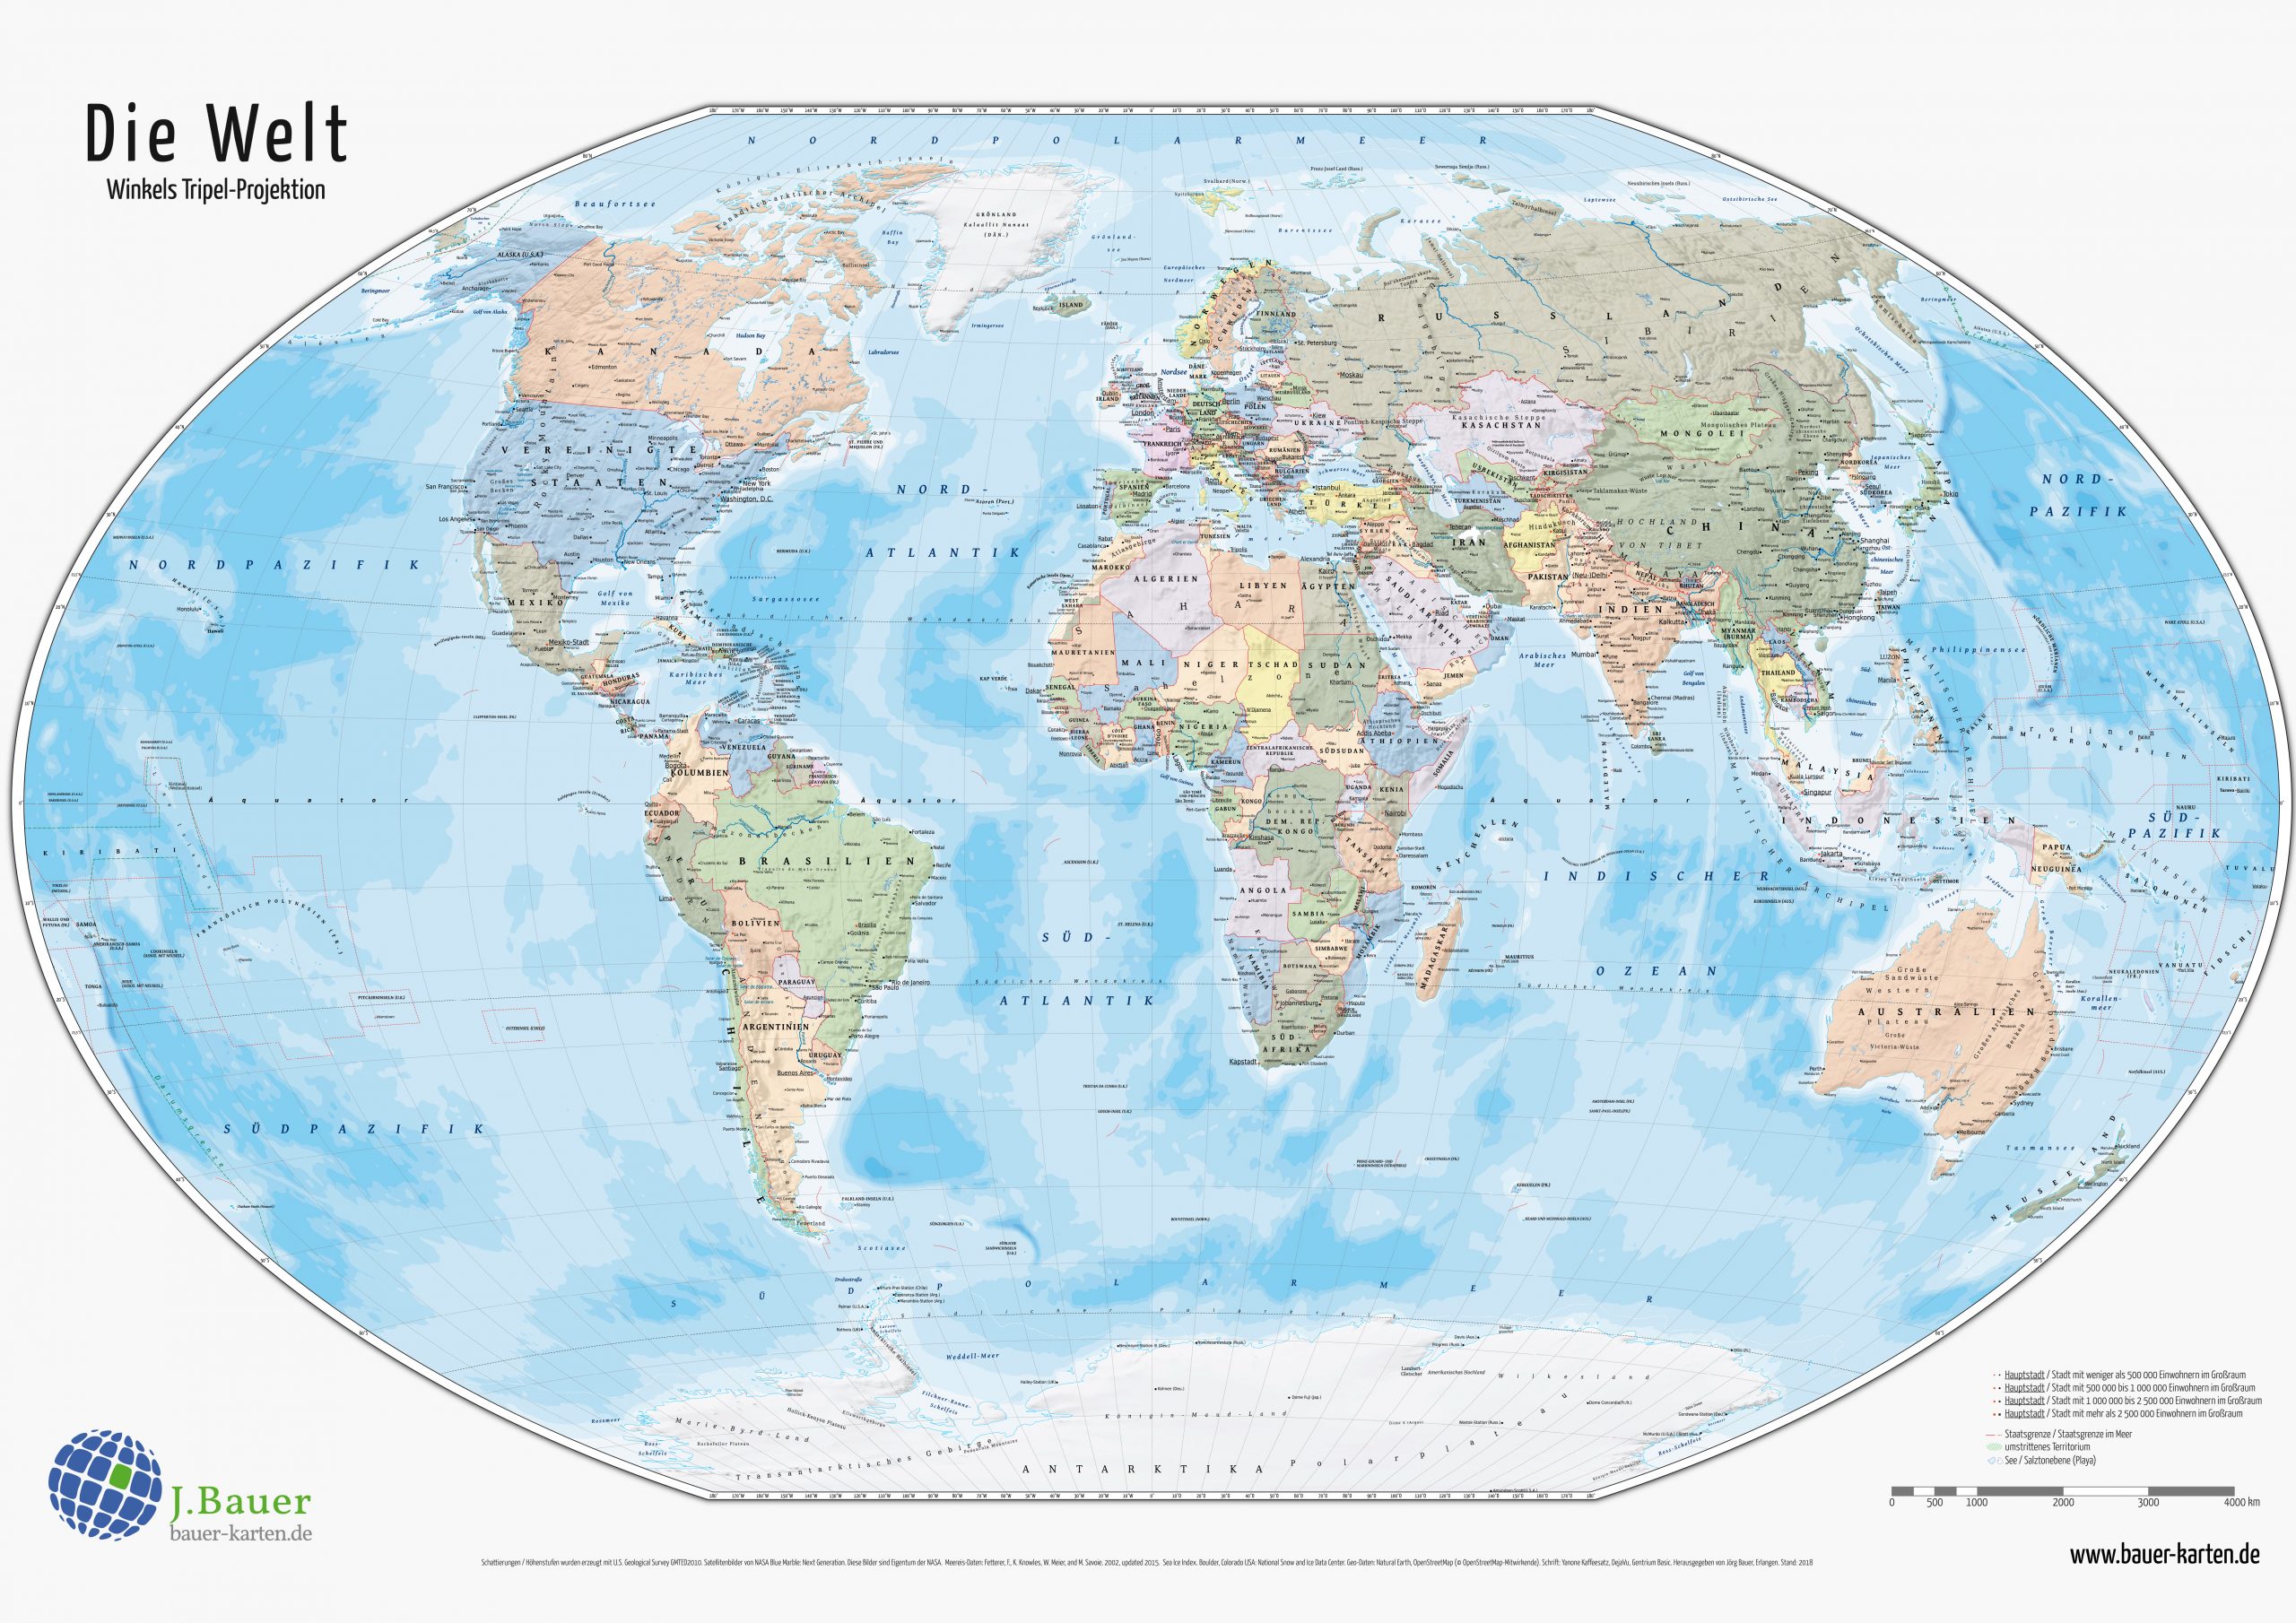 Weltkarten Zum Herunterladen Und Ausdrucken verwandt mit Weltkarte Zum Ausdrucken